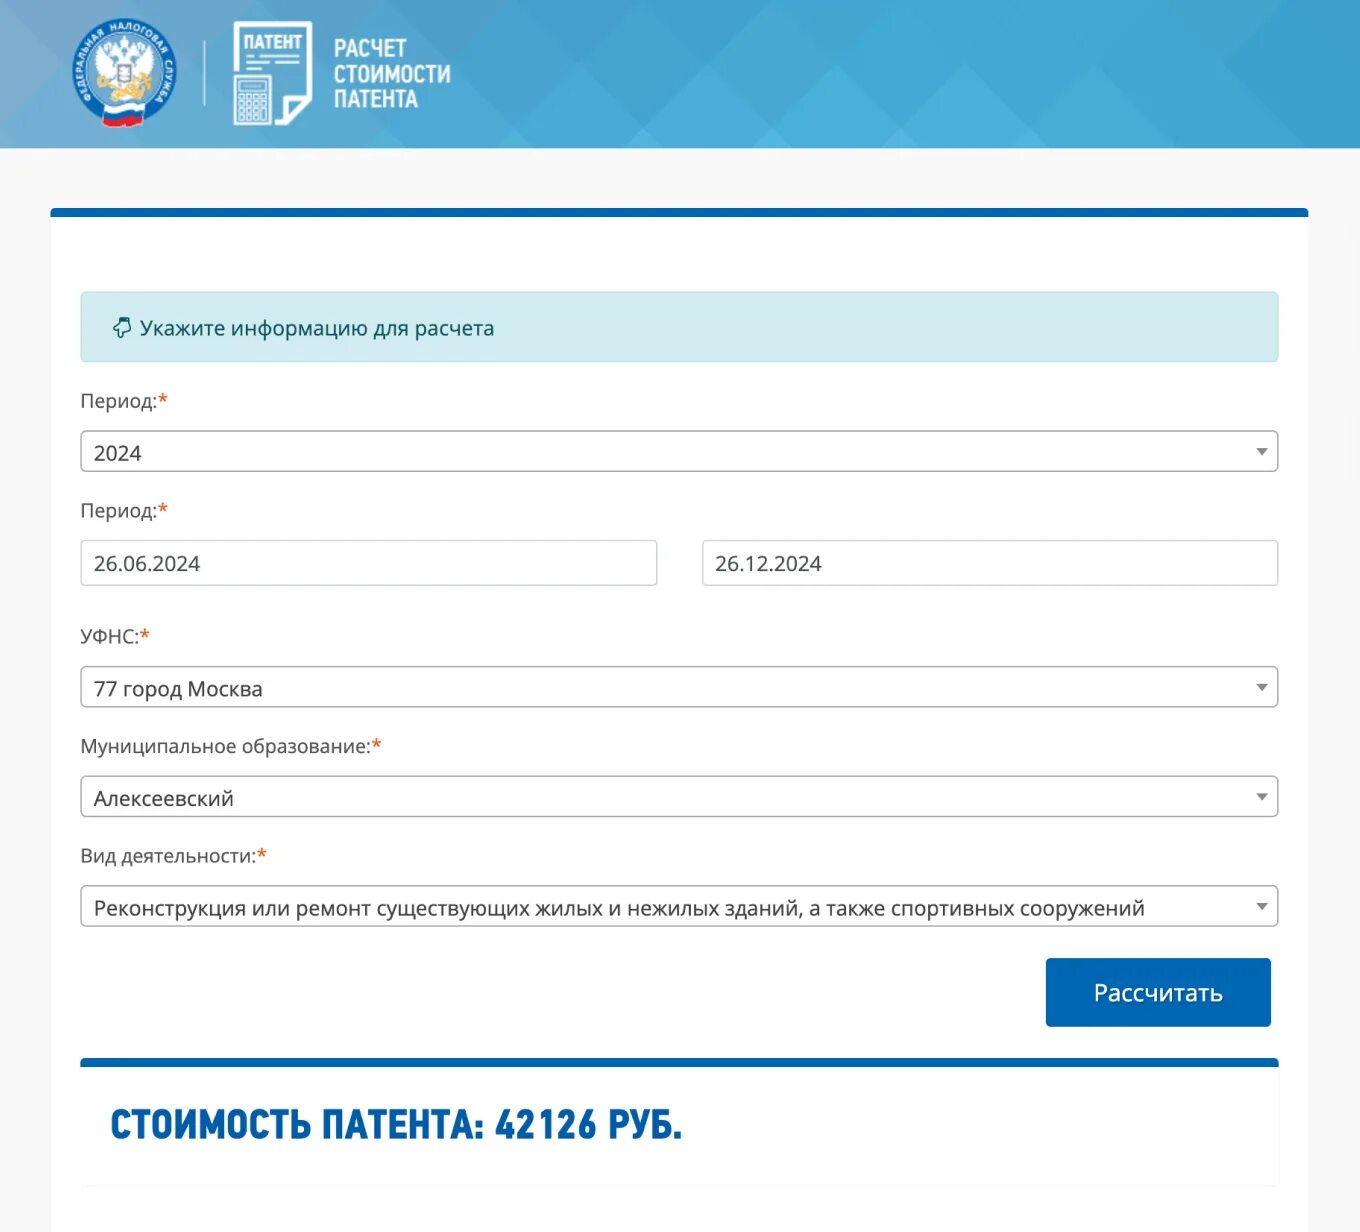 Патент в Москве 2022. Патент ИП 2023. Патент для ИП 2022. Стоимость патента в 2022 году. Уплата патента в 2024 году уведомление